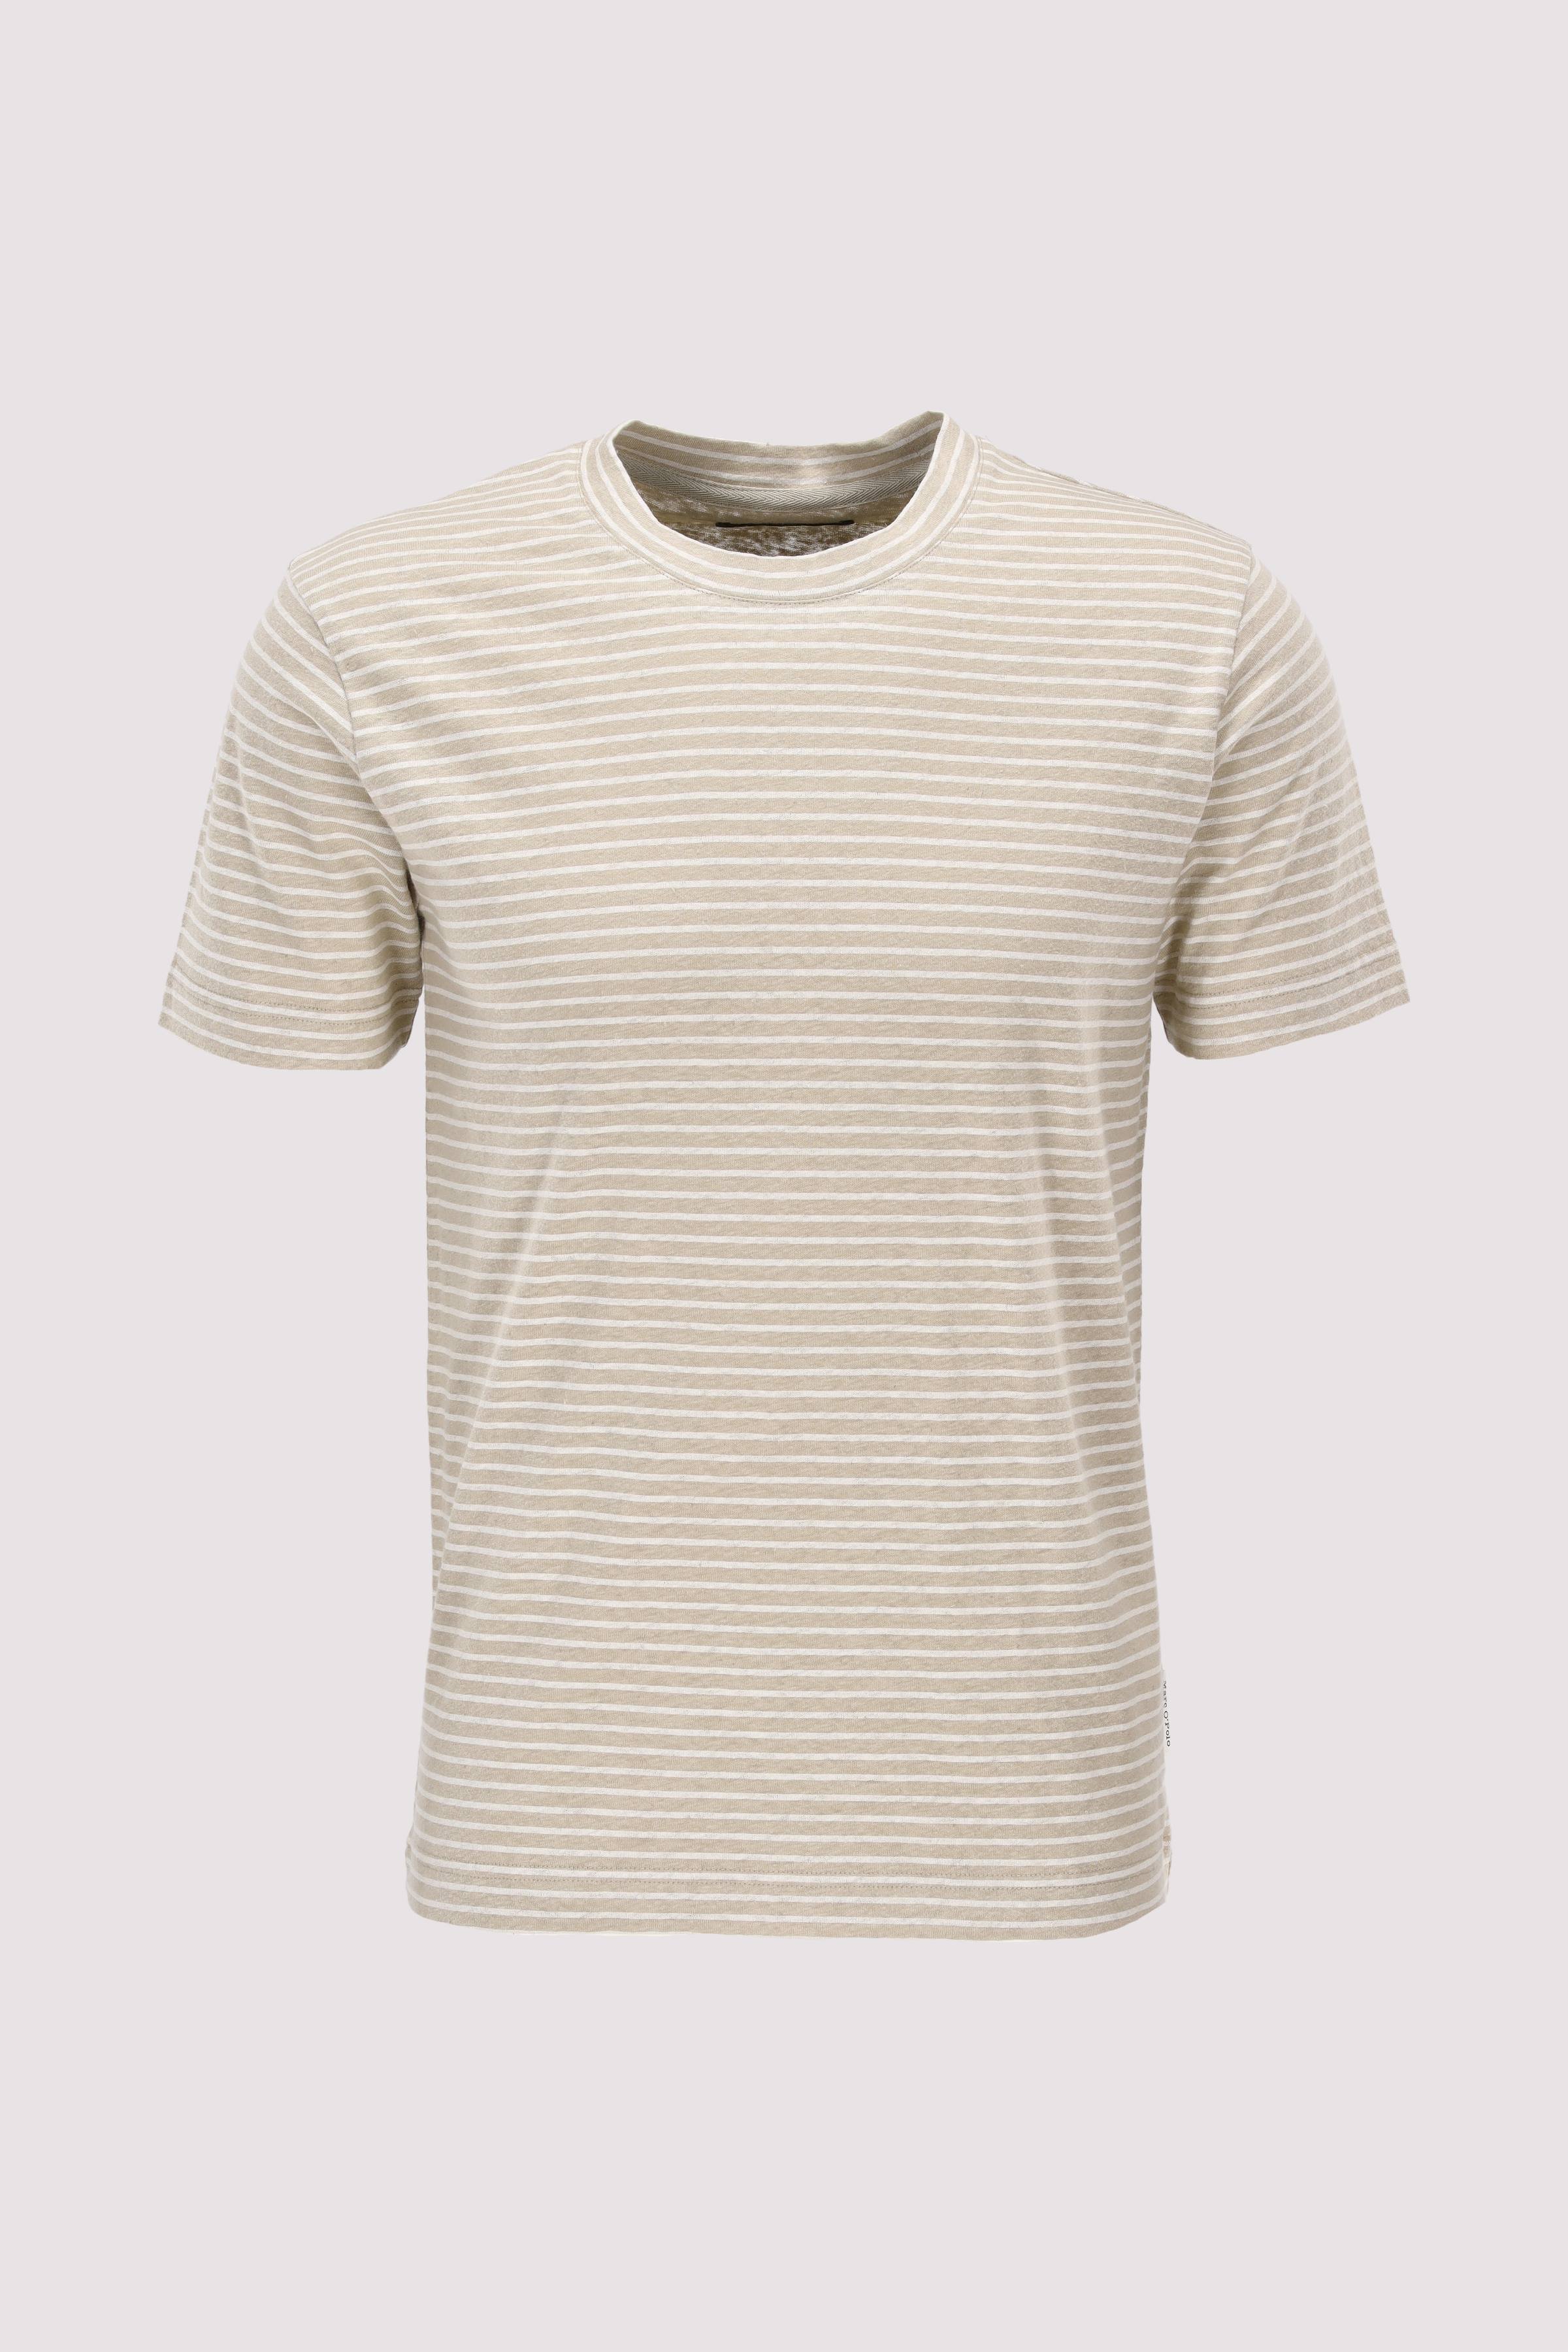 T-shirt, short sleeve, cotton 